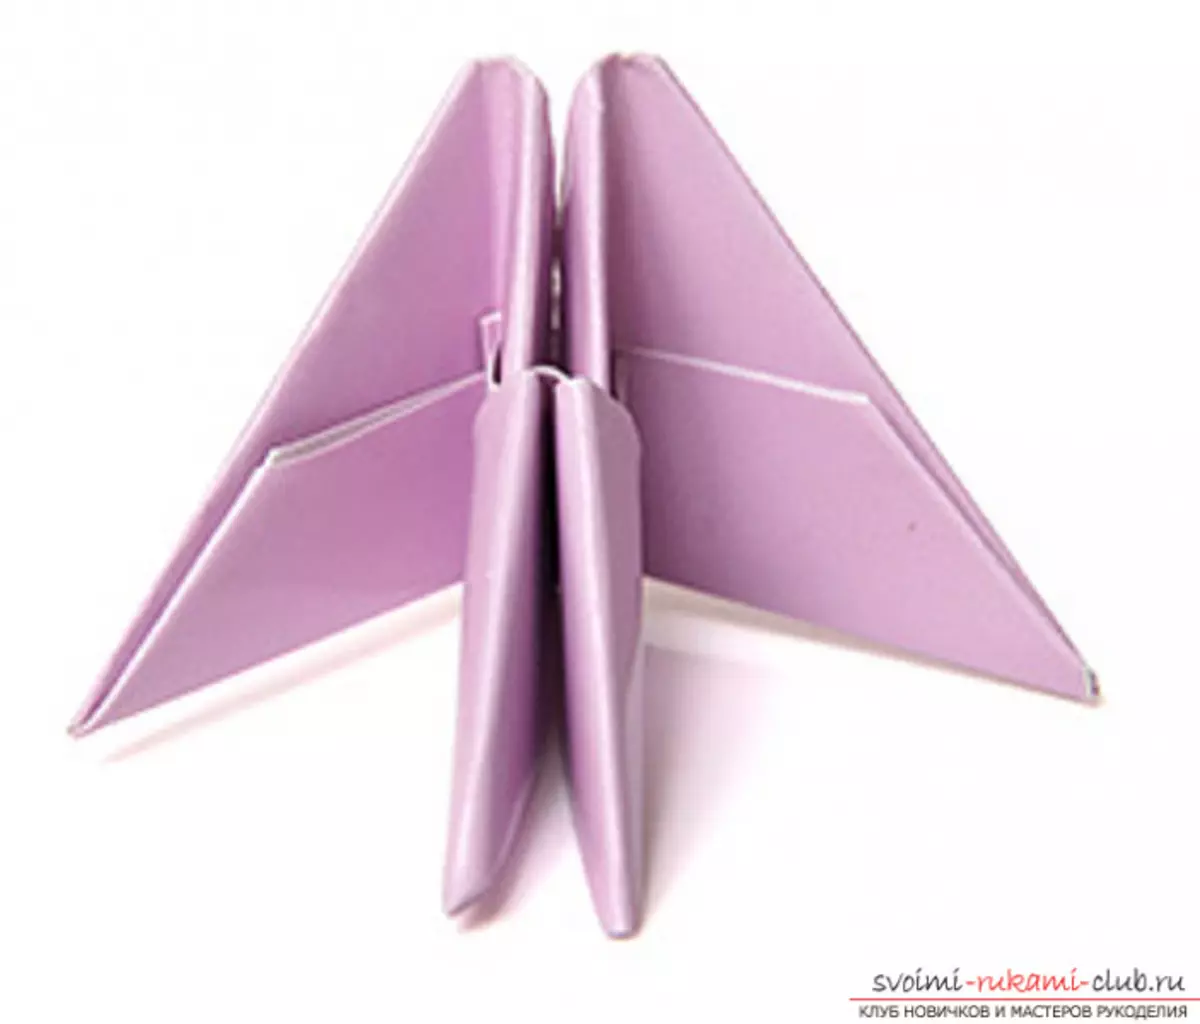 Lebed origami dalla carta: come fare passo passo con foto e video